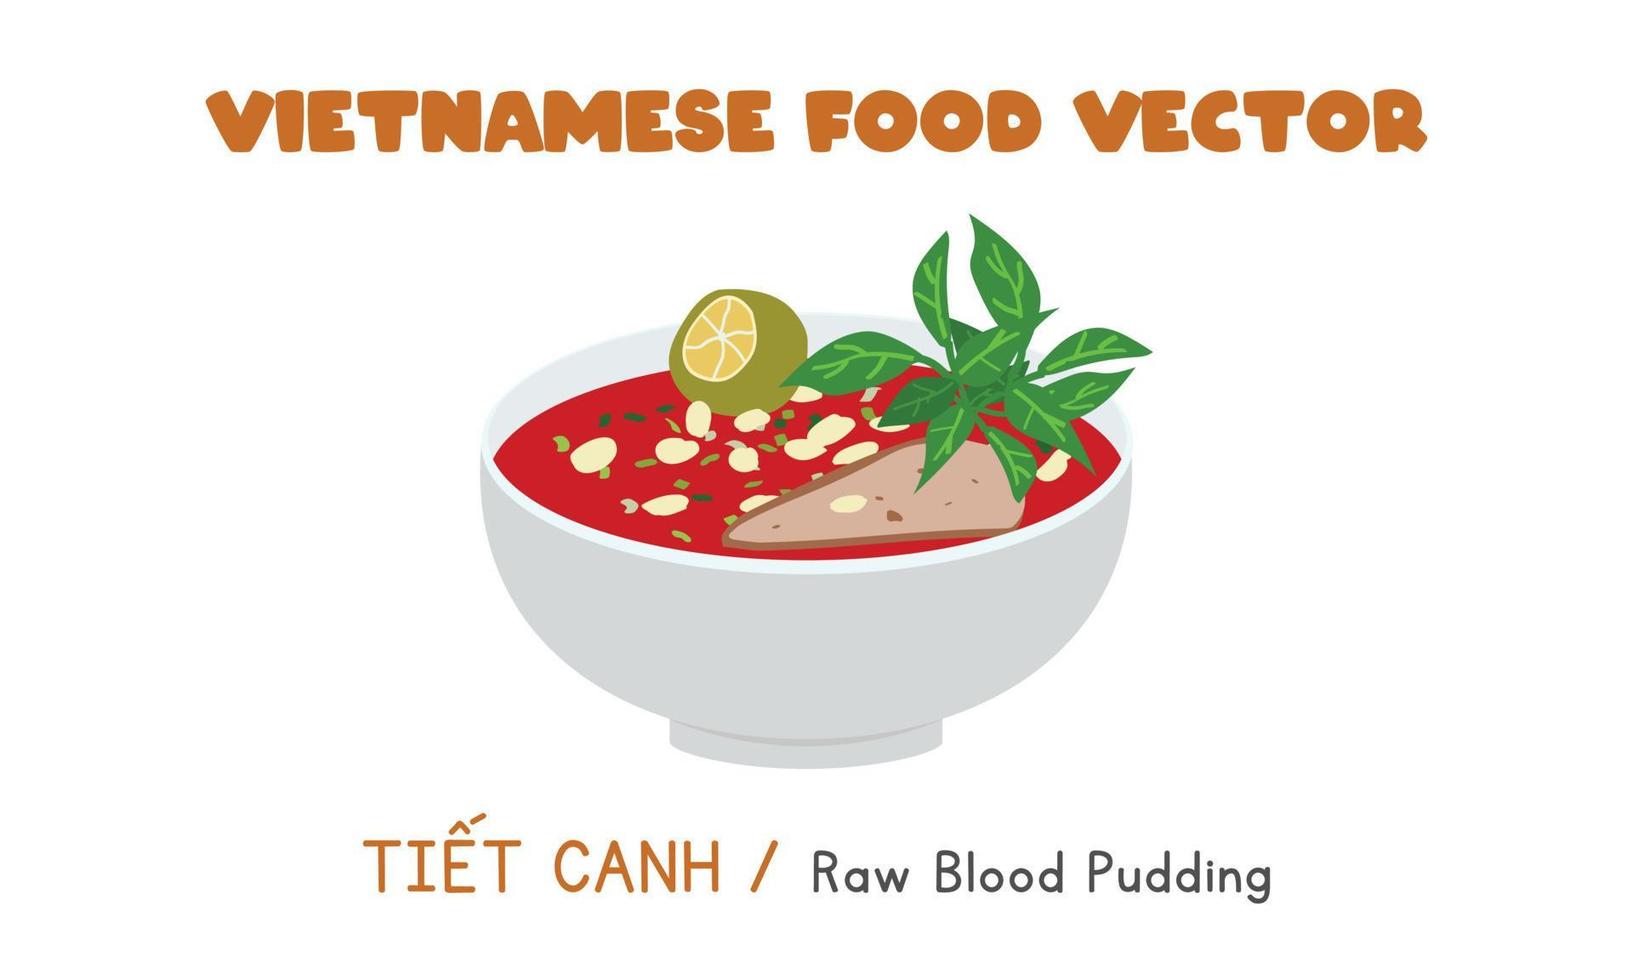 vietnamesischer roher blutpudding flaches vektordesign. tiet canh Clipart Cartoon-Stil. asiatisches Essen. Vietnamesische Küche. gruseliges Essen, Horroressen vektor